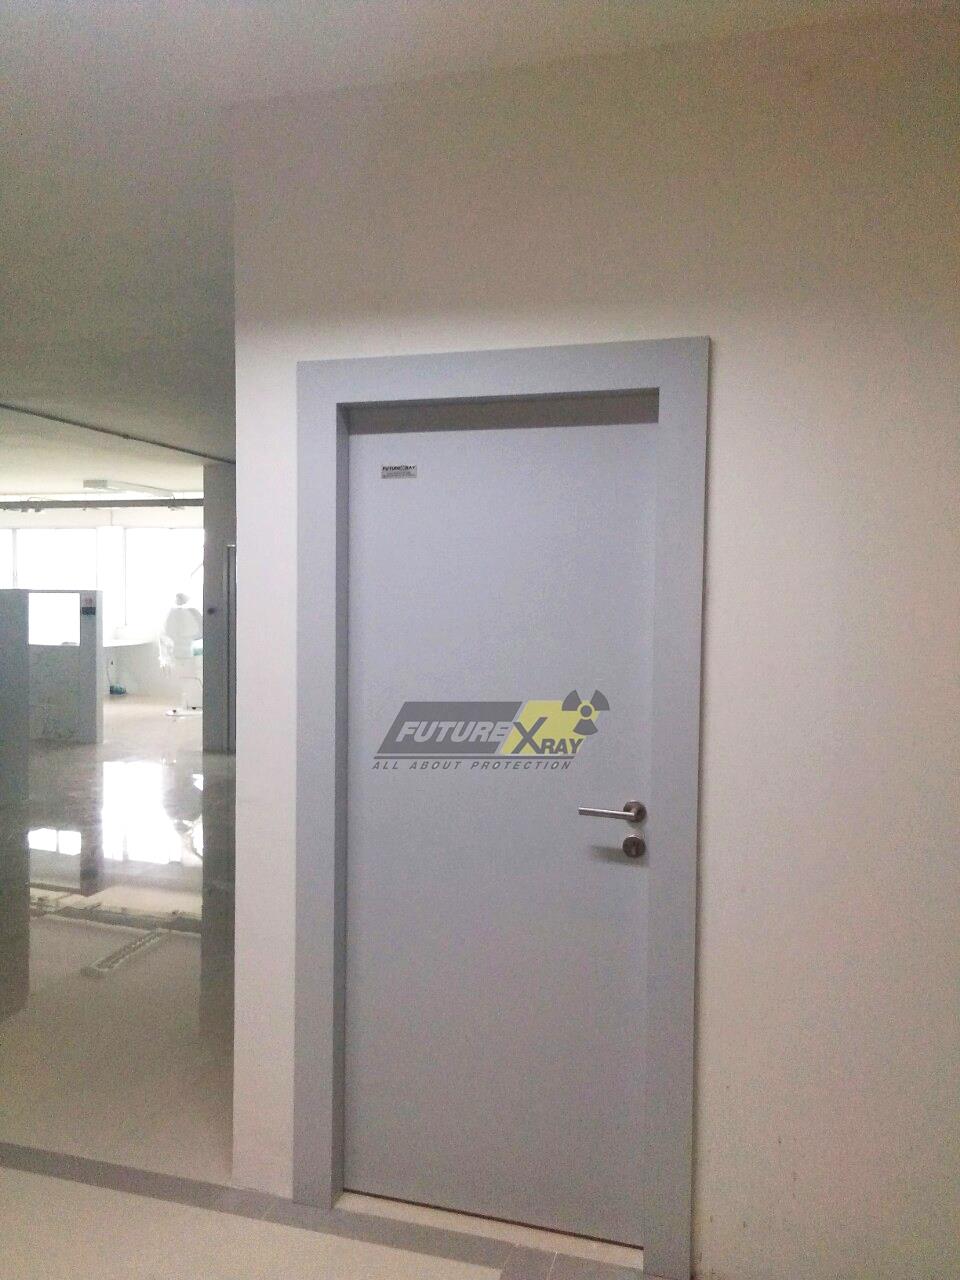 ประตูบานเปิดกรุตะกั่ว ป้องกันรังสีเอกซเรย์,ประตูกันรังสี ,ประตูห้องเอกซเรย์ , ประตูป้องกันรังสีเอ็กซเรย์ , x-ray door,Future-Xray,Plant and Facility Equipment/Building Products/Doors